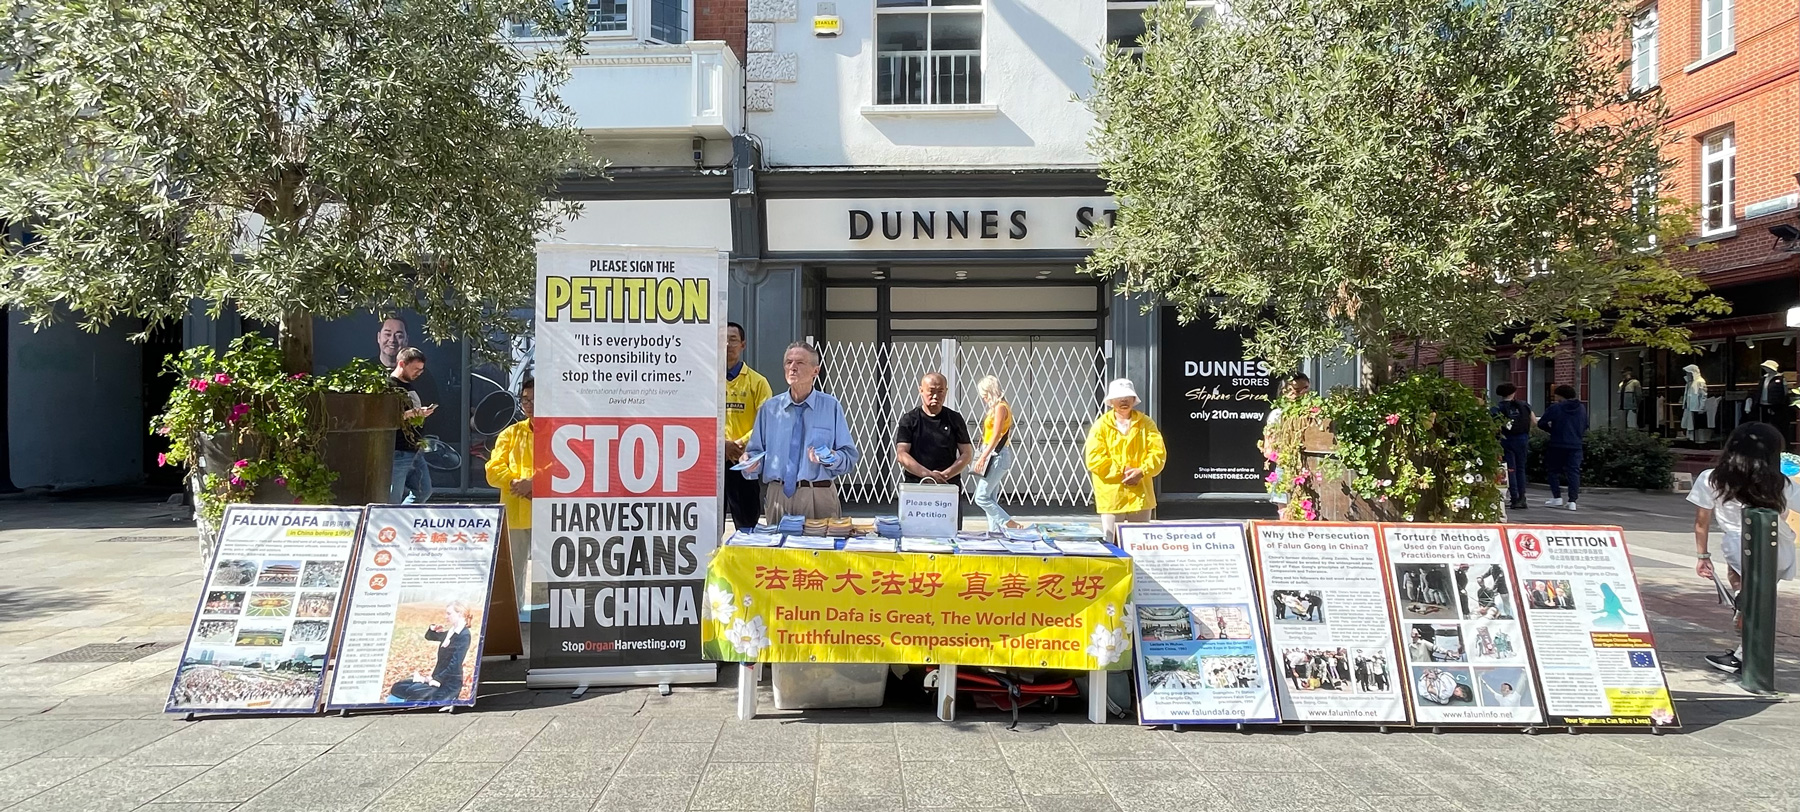 Image for article Un Chinois en Irlande intéressé par le Falun Dafa : « Continuez le bon travail ! »